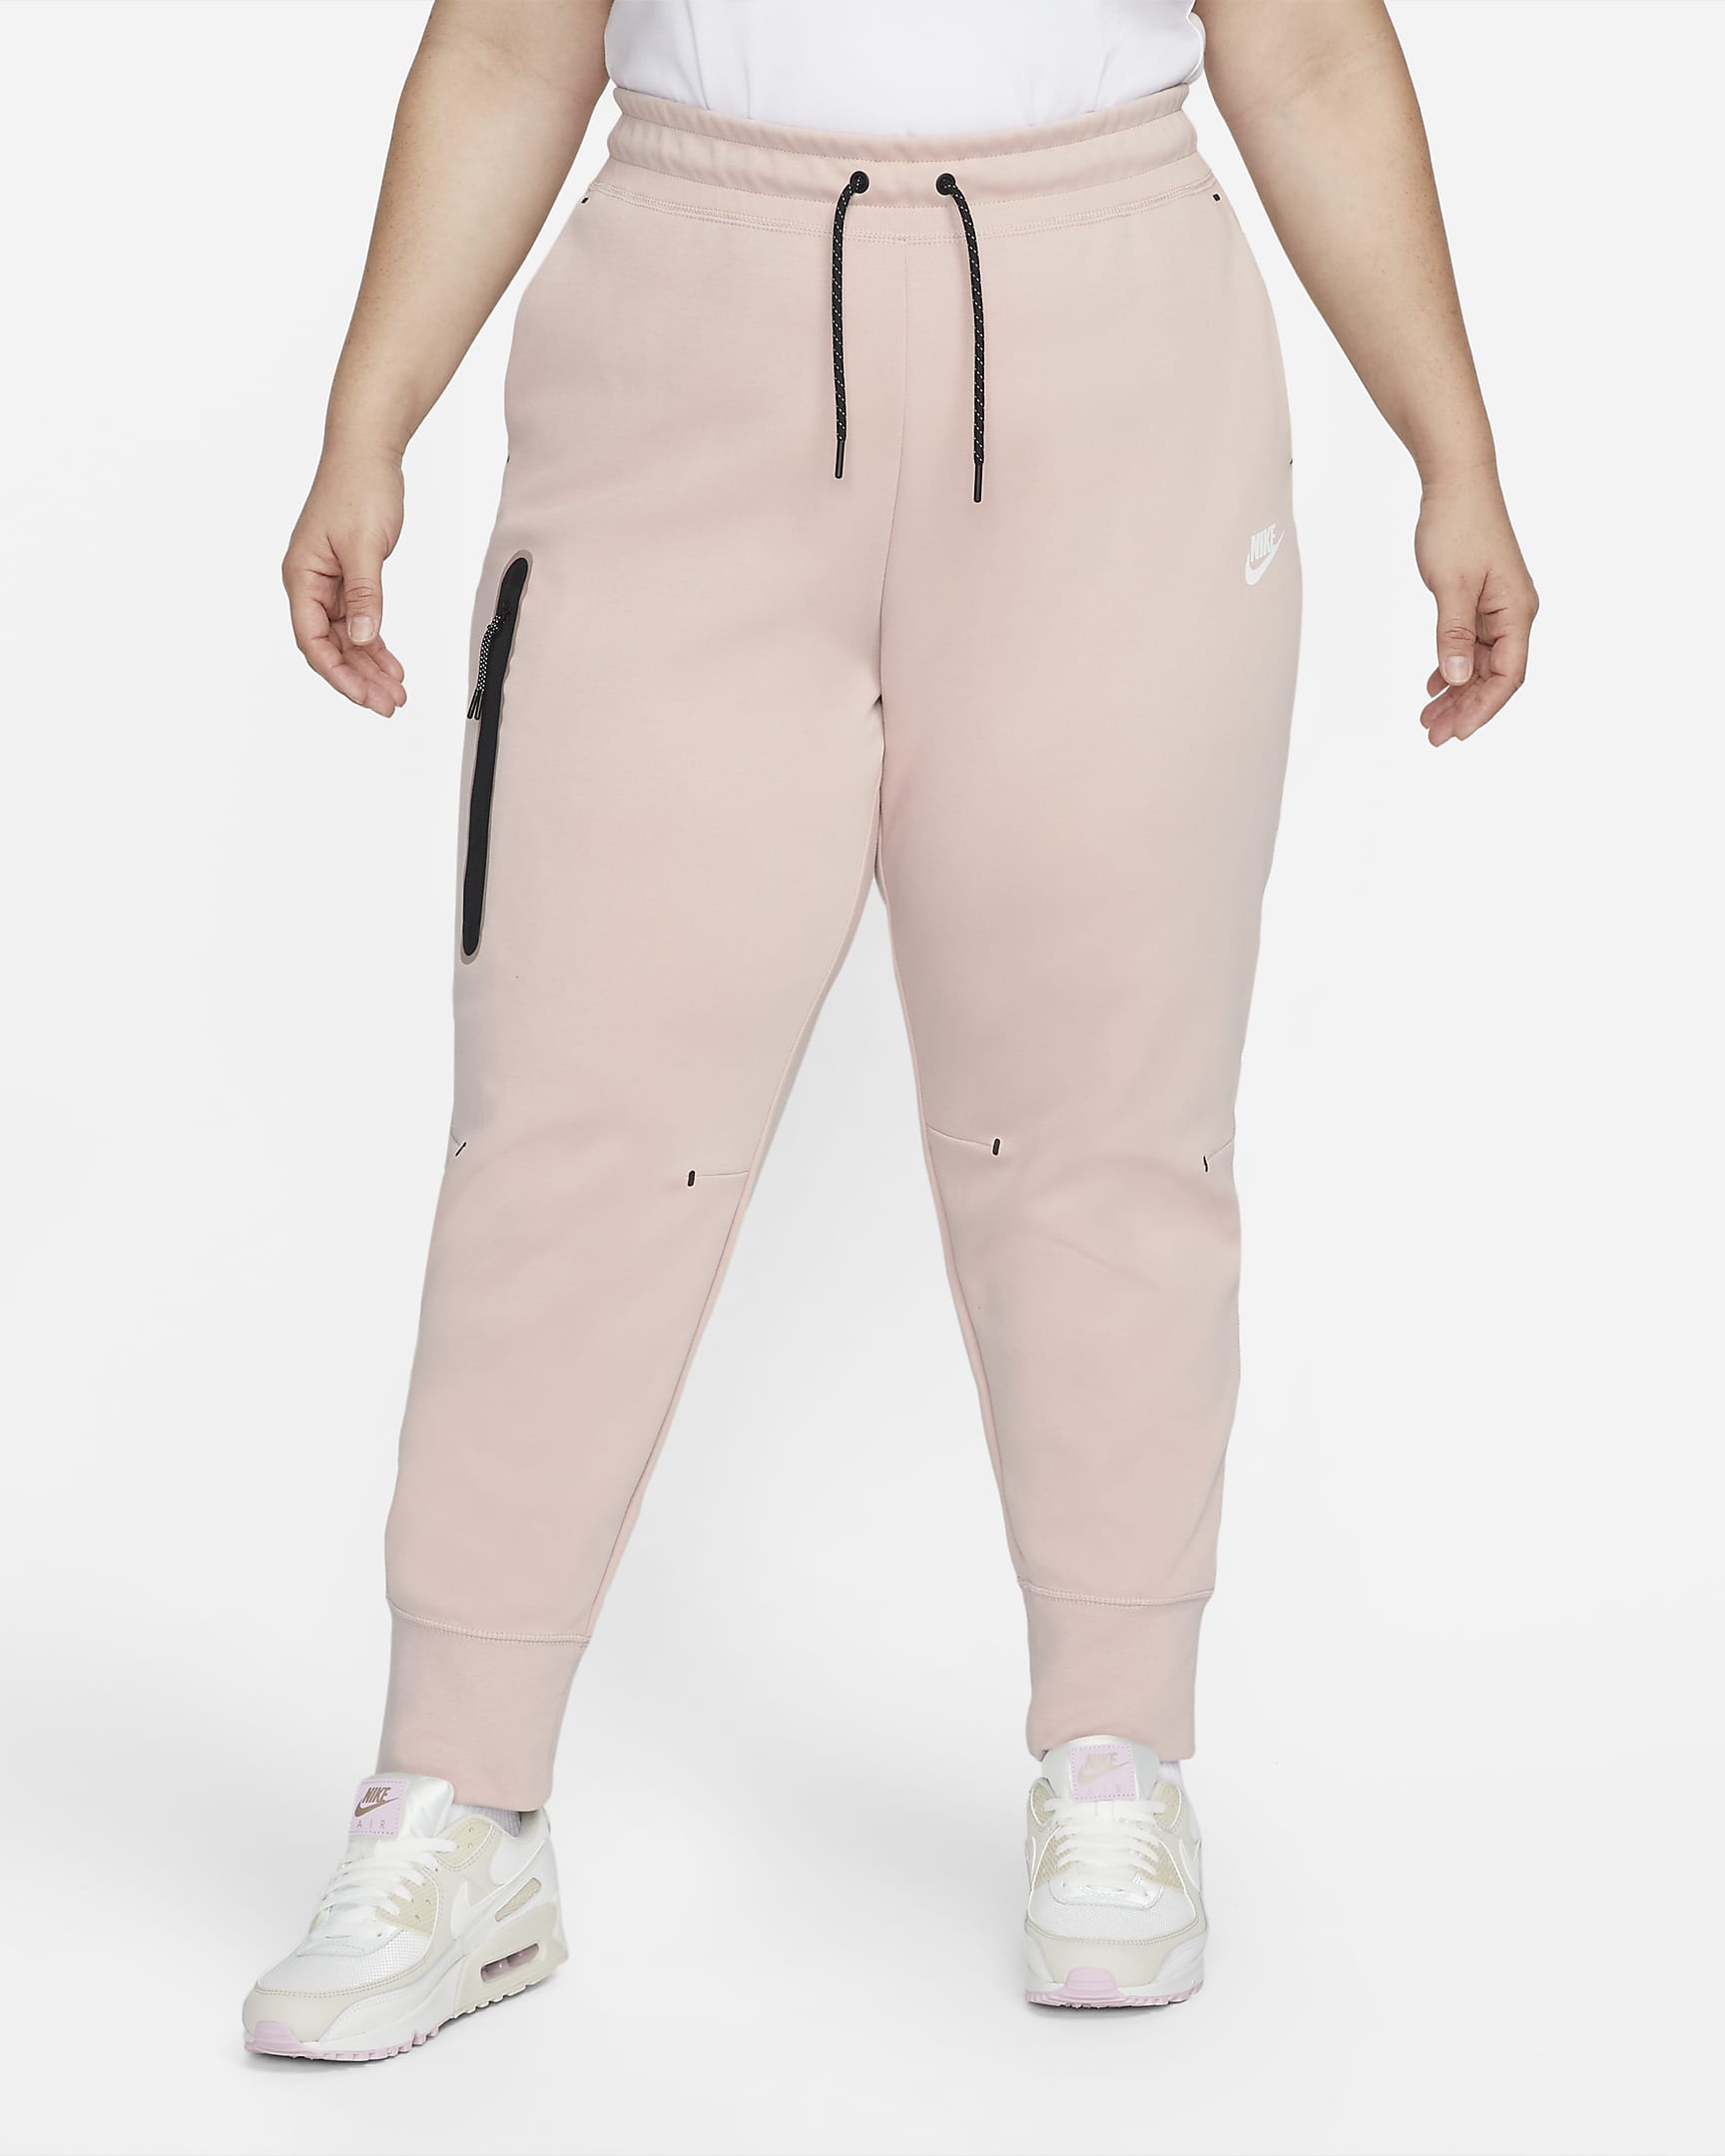 nike-sportswear-tech-fleece-womens-pants-plus-size-2dFd6t.png